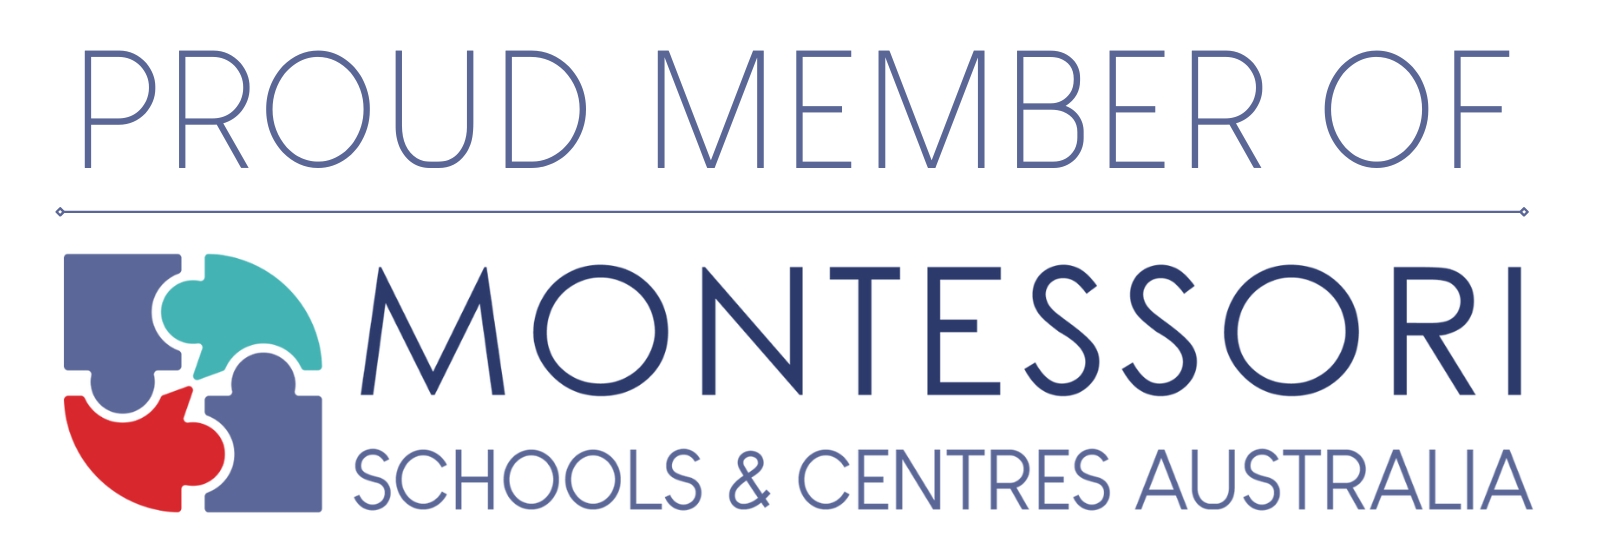 proud member of Montessori schools & centres Australia